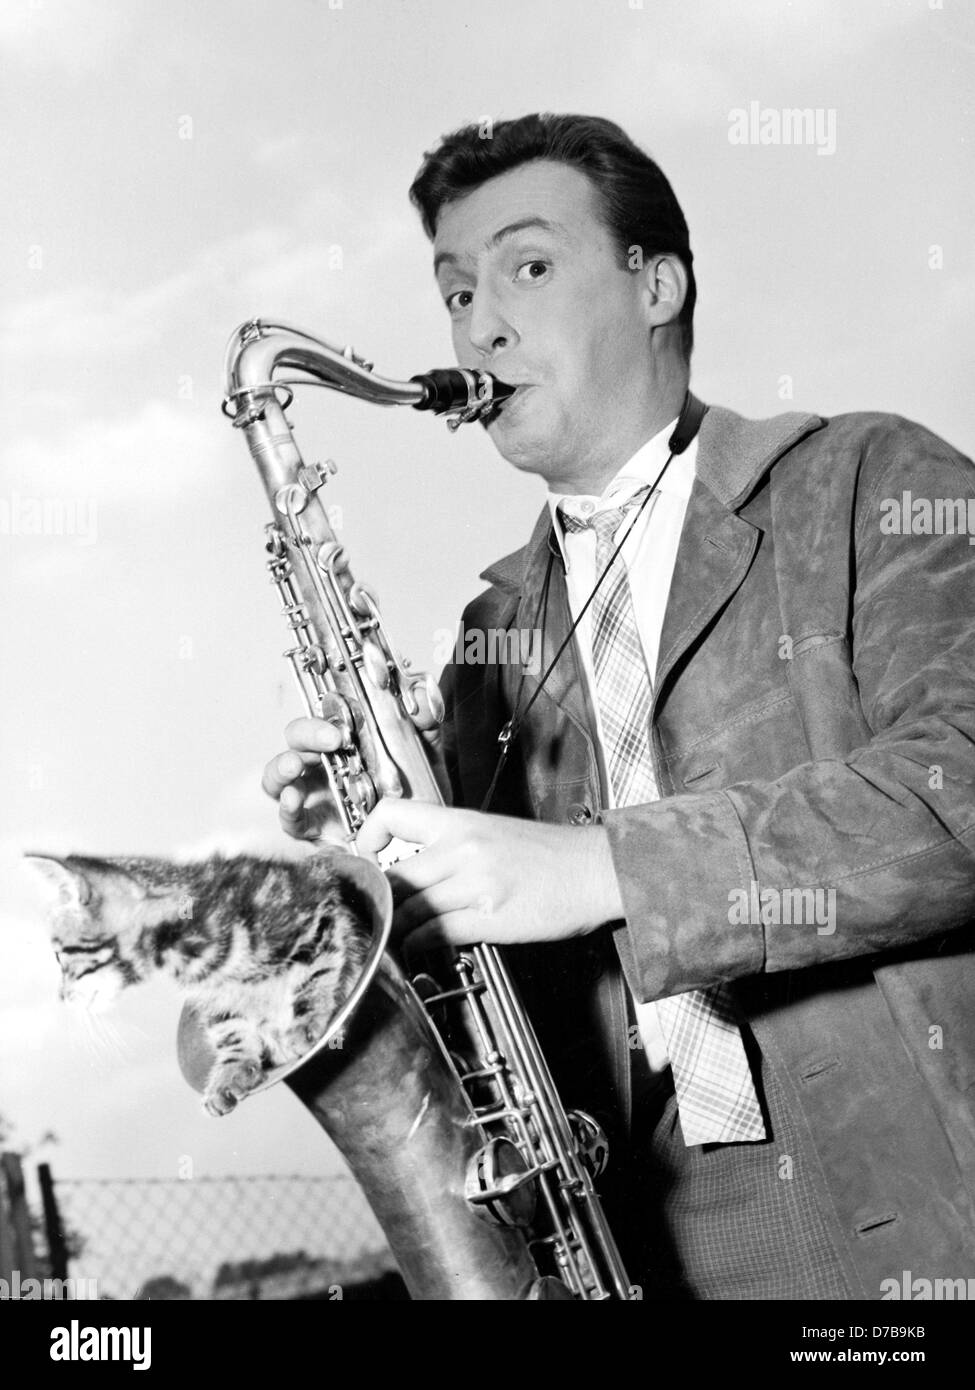 Österreichischer Sänger, Schauspieler und Entertainer Peter Alexander spielt Saxophon (undatiertes Archiv Bild). Stockfoto